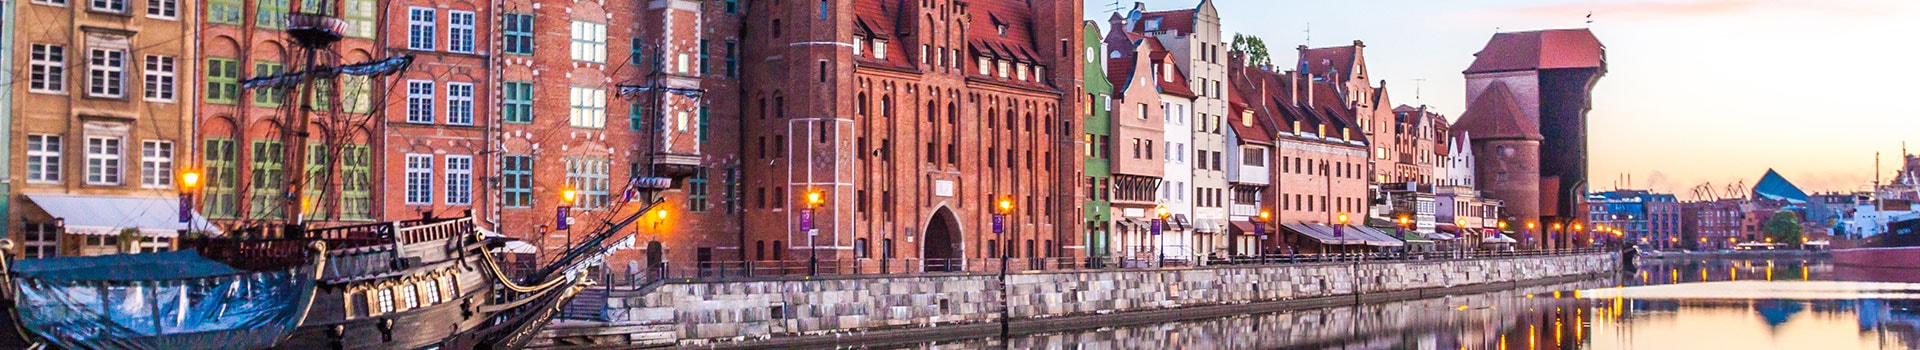 Valencia - Gdansk